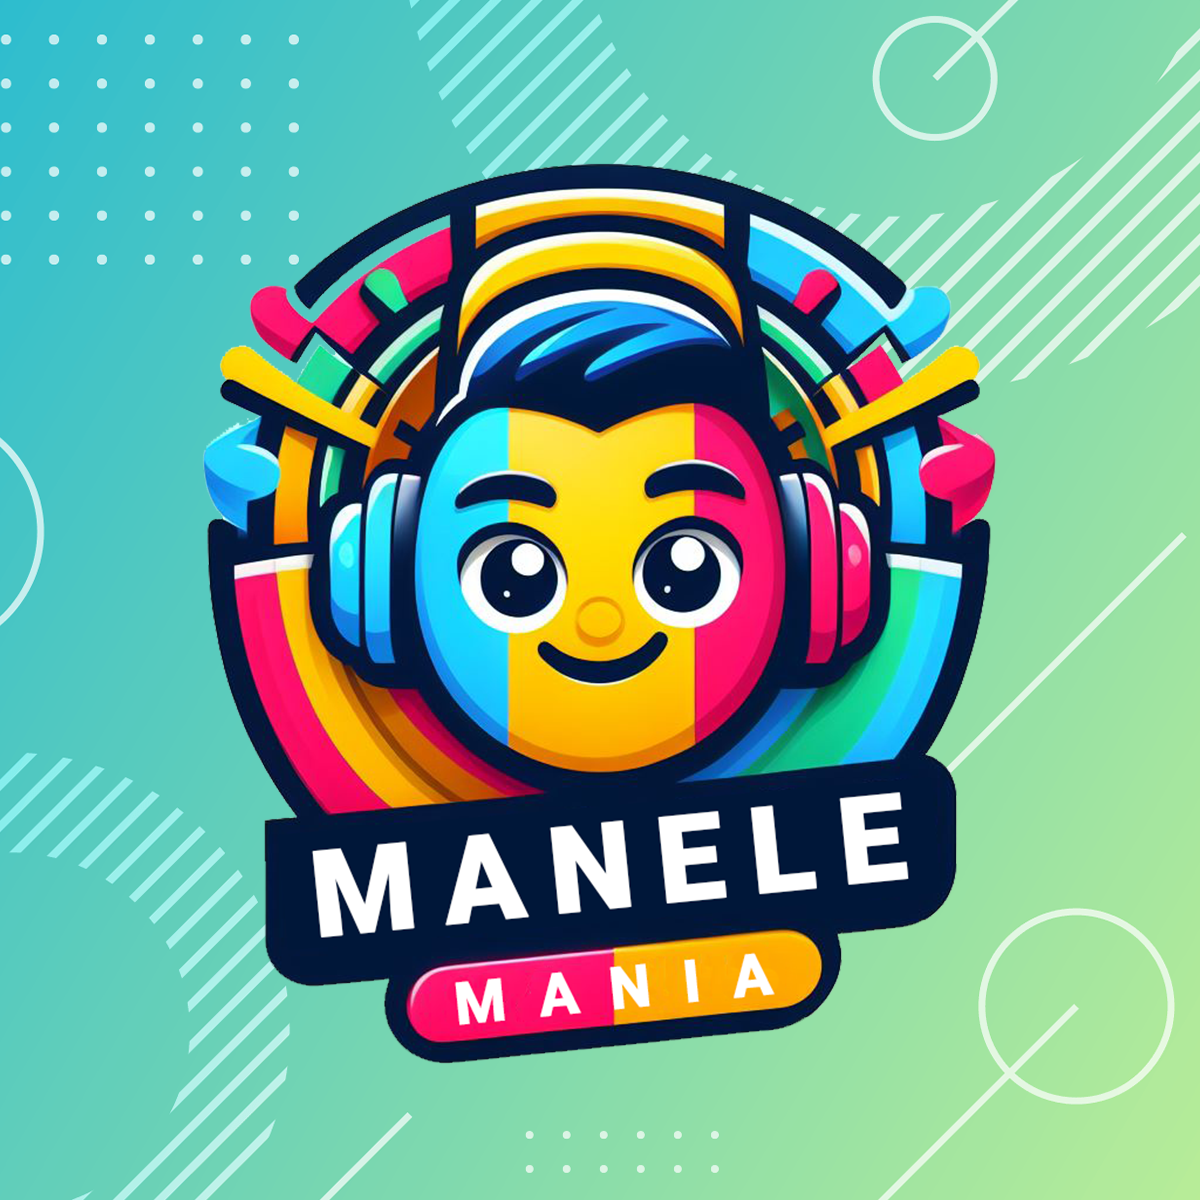 Radio Manele Mania